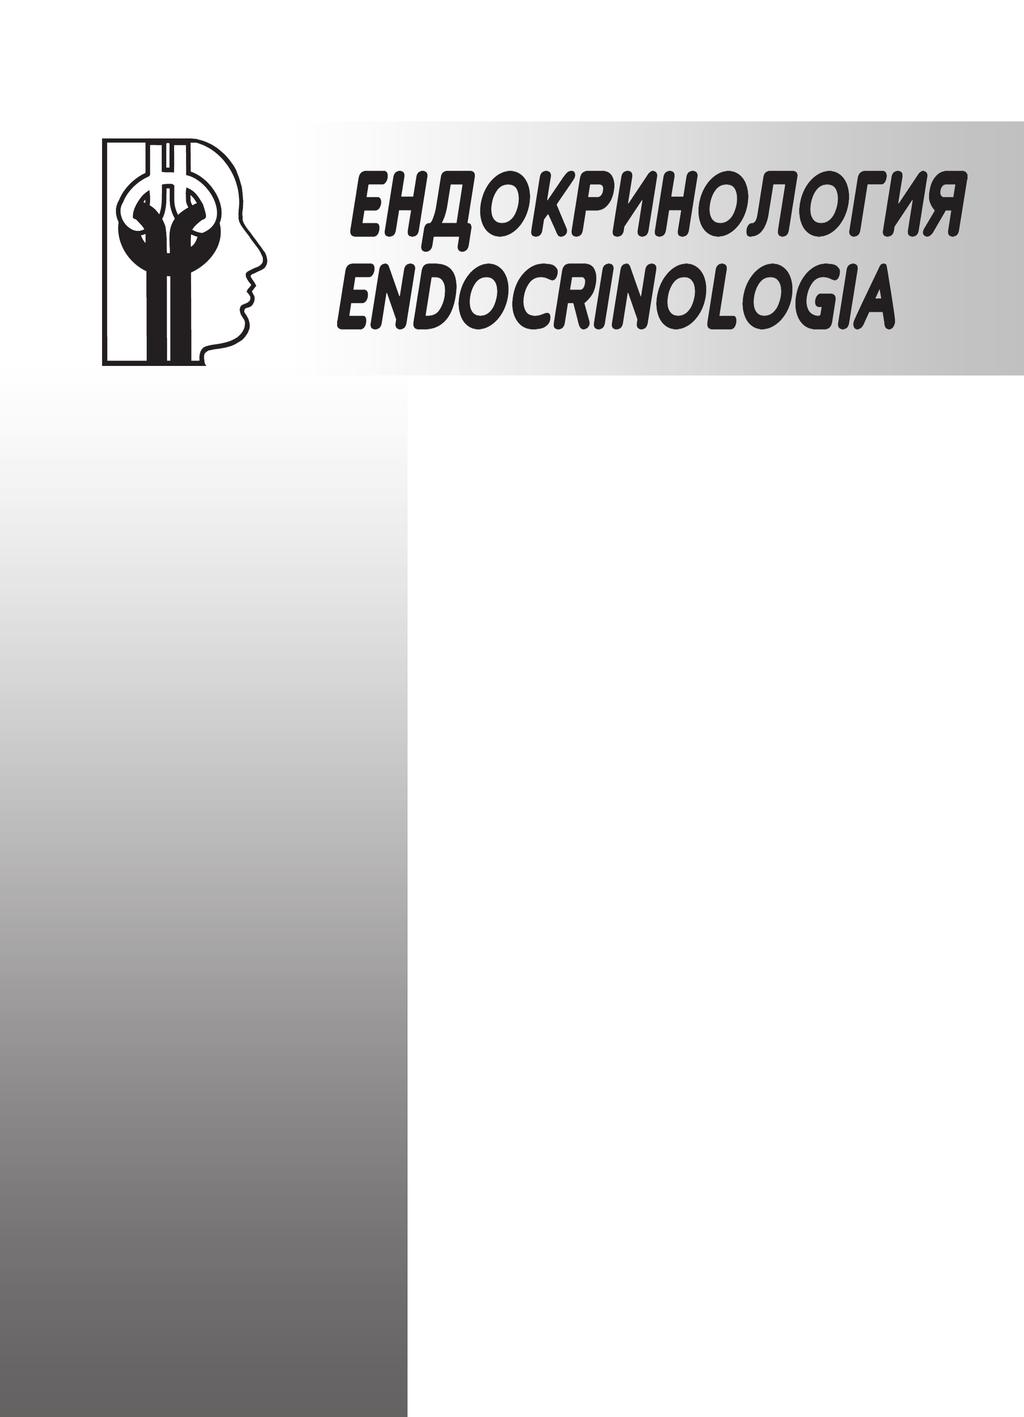 ISSN 1310-8131 Списание на Българското дружество по ендокринология към СНМД в България Journal of the Bulgarian Society of Endocrinology (BSE) Главен редактор Проф.